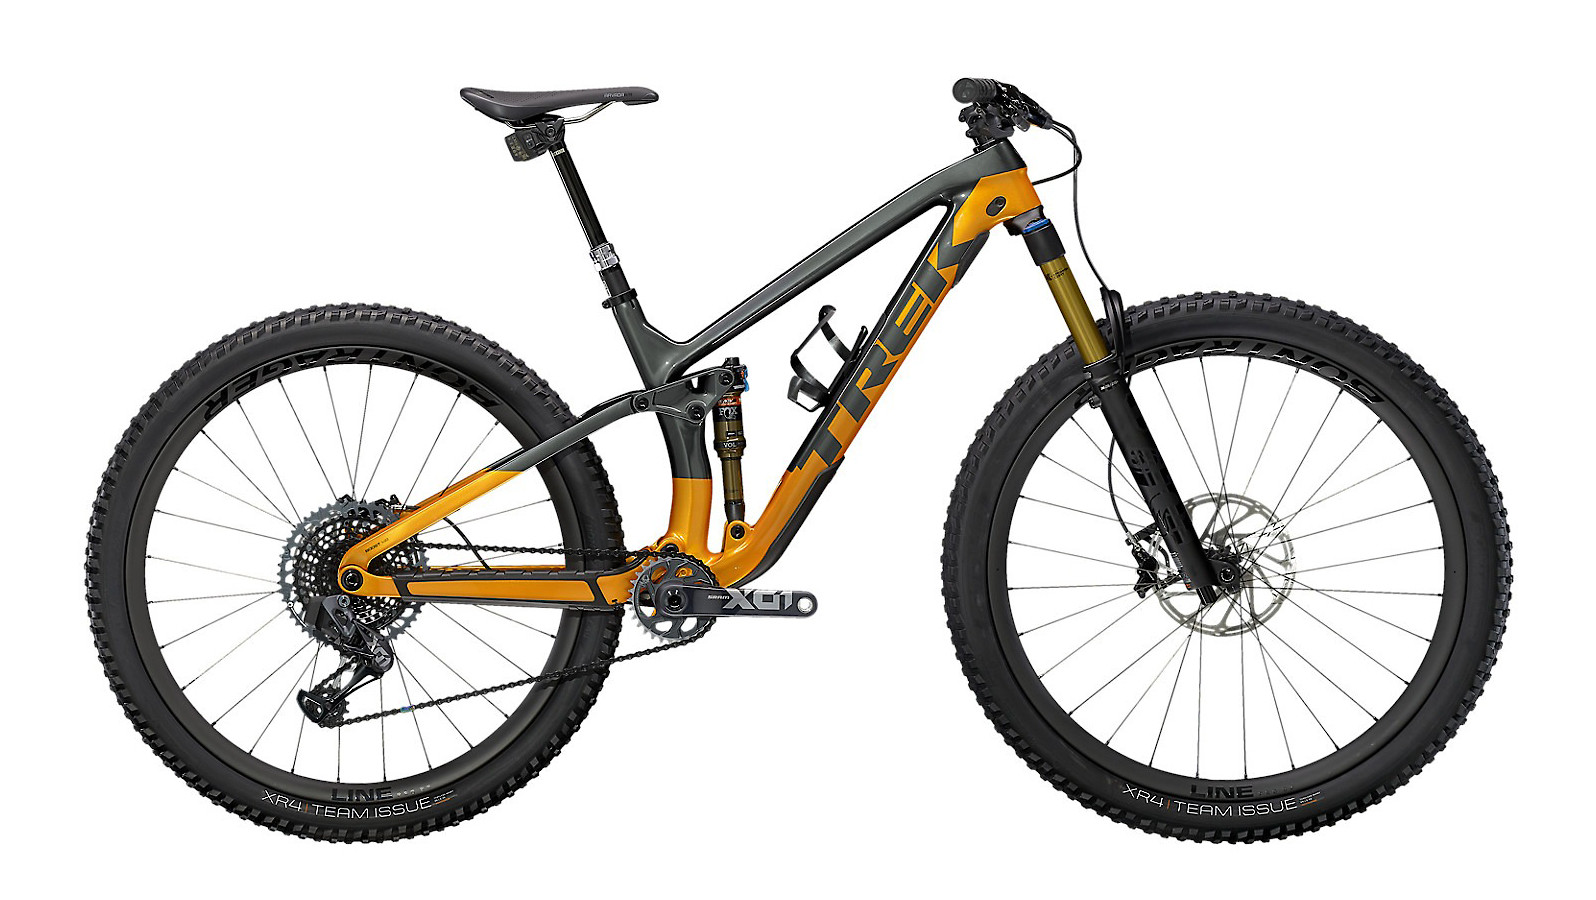 Trek Fuel EX 9.9 X01 AXS Carbon Full Suspension Bike